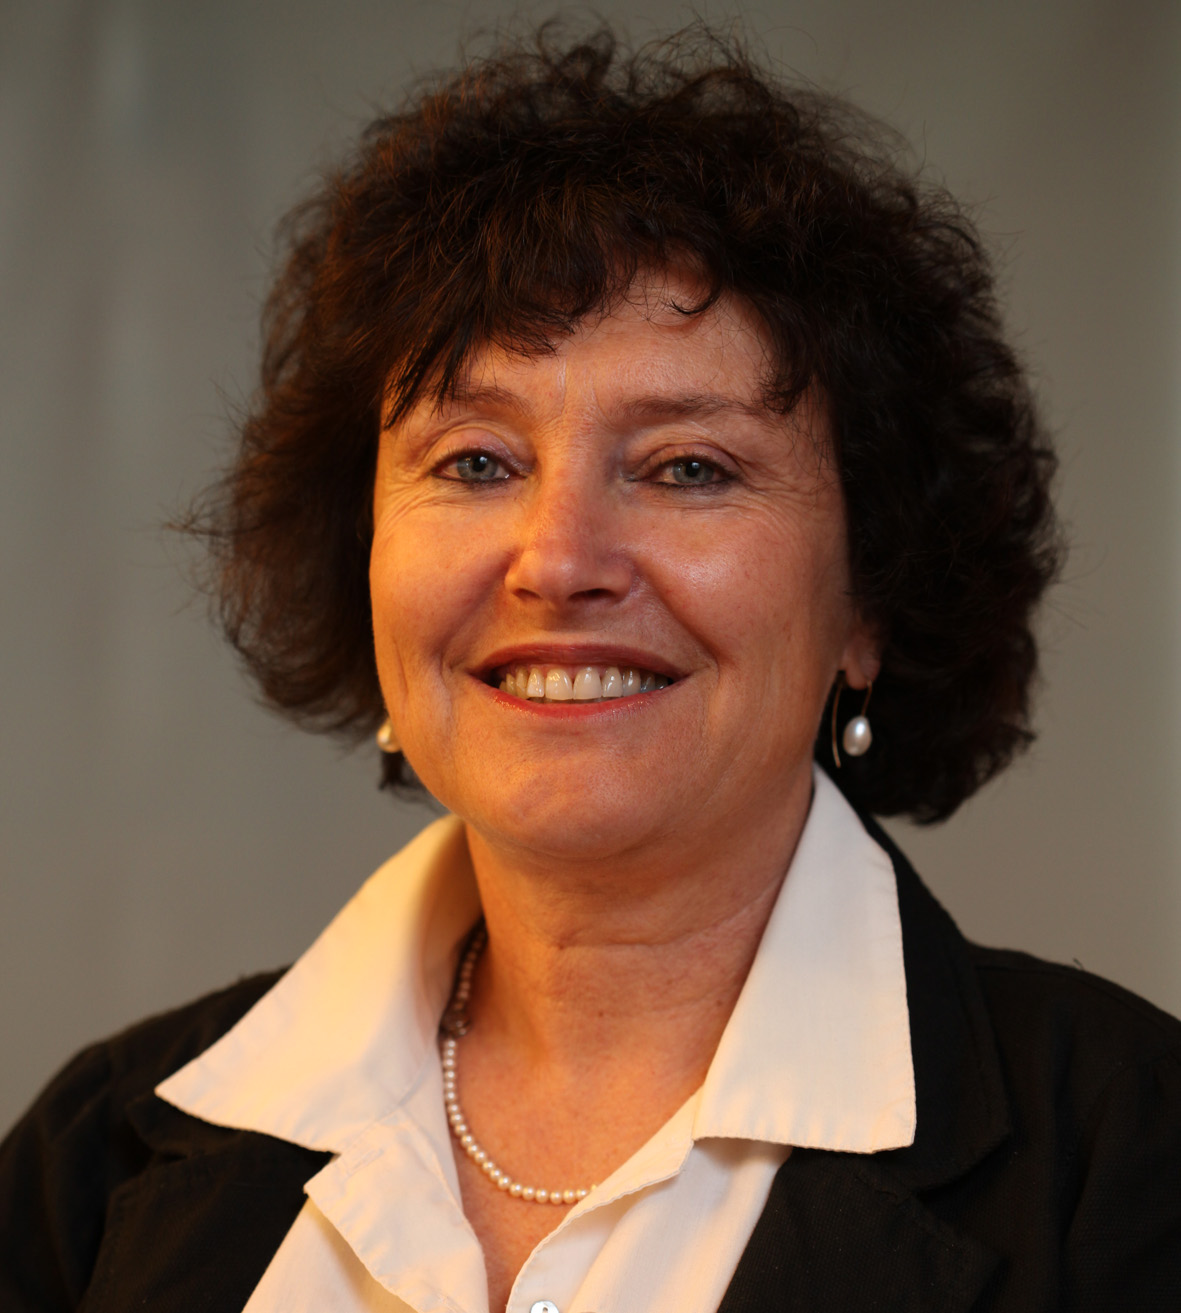 Dr. Karnit Flug, Bank of Israel Governor